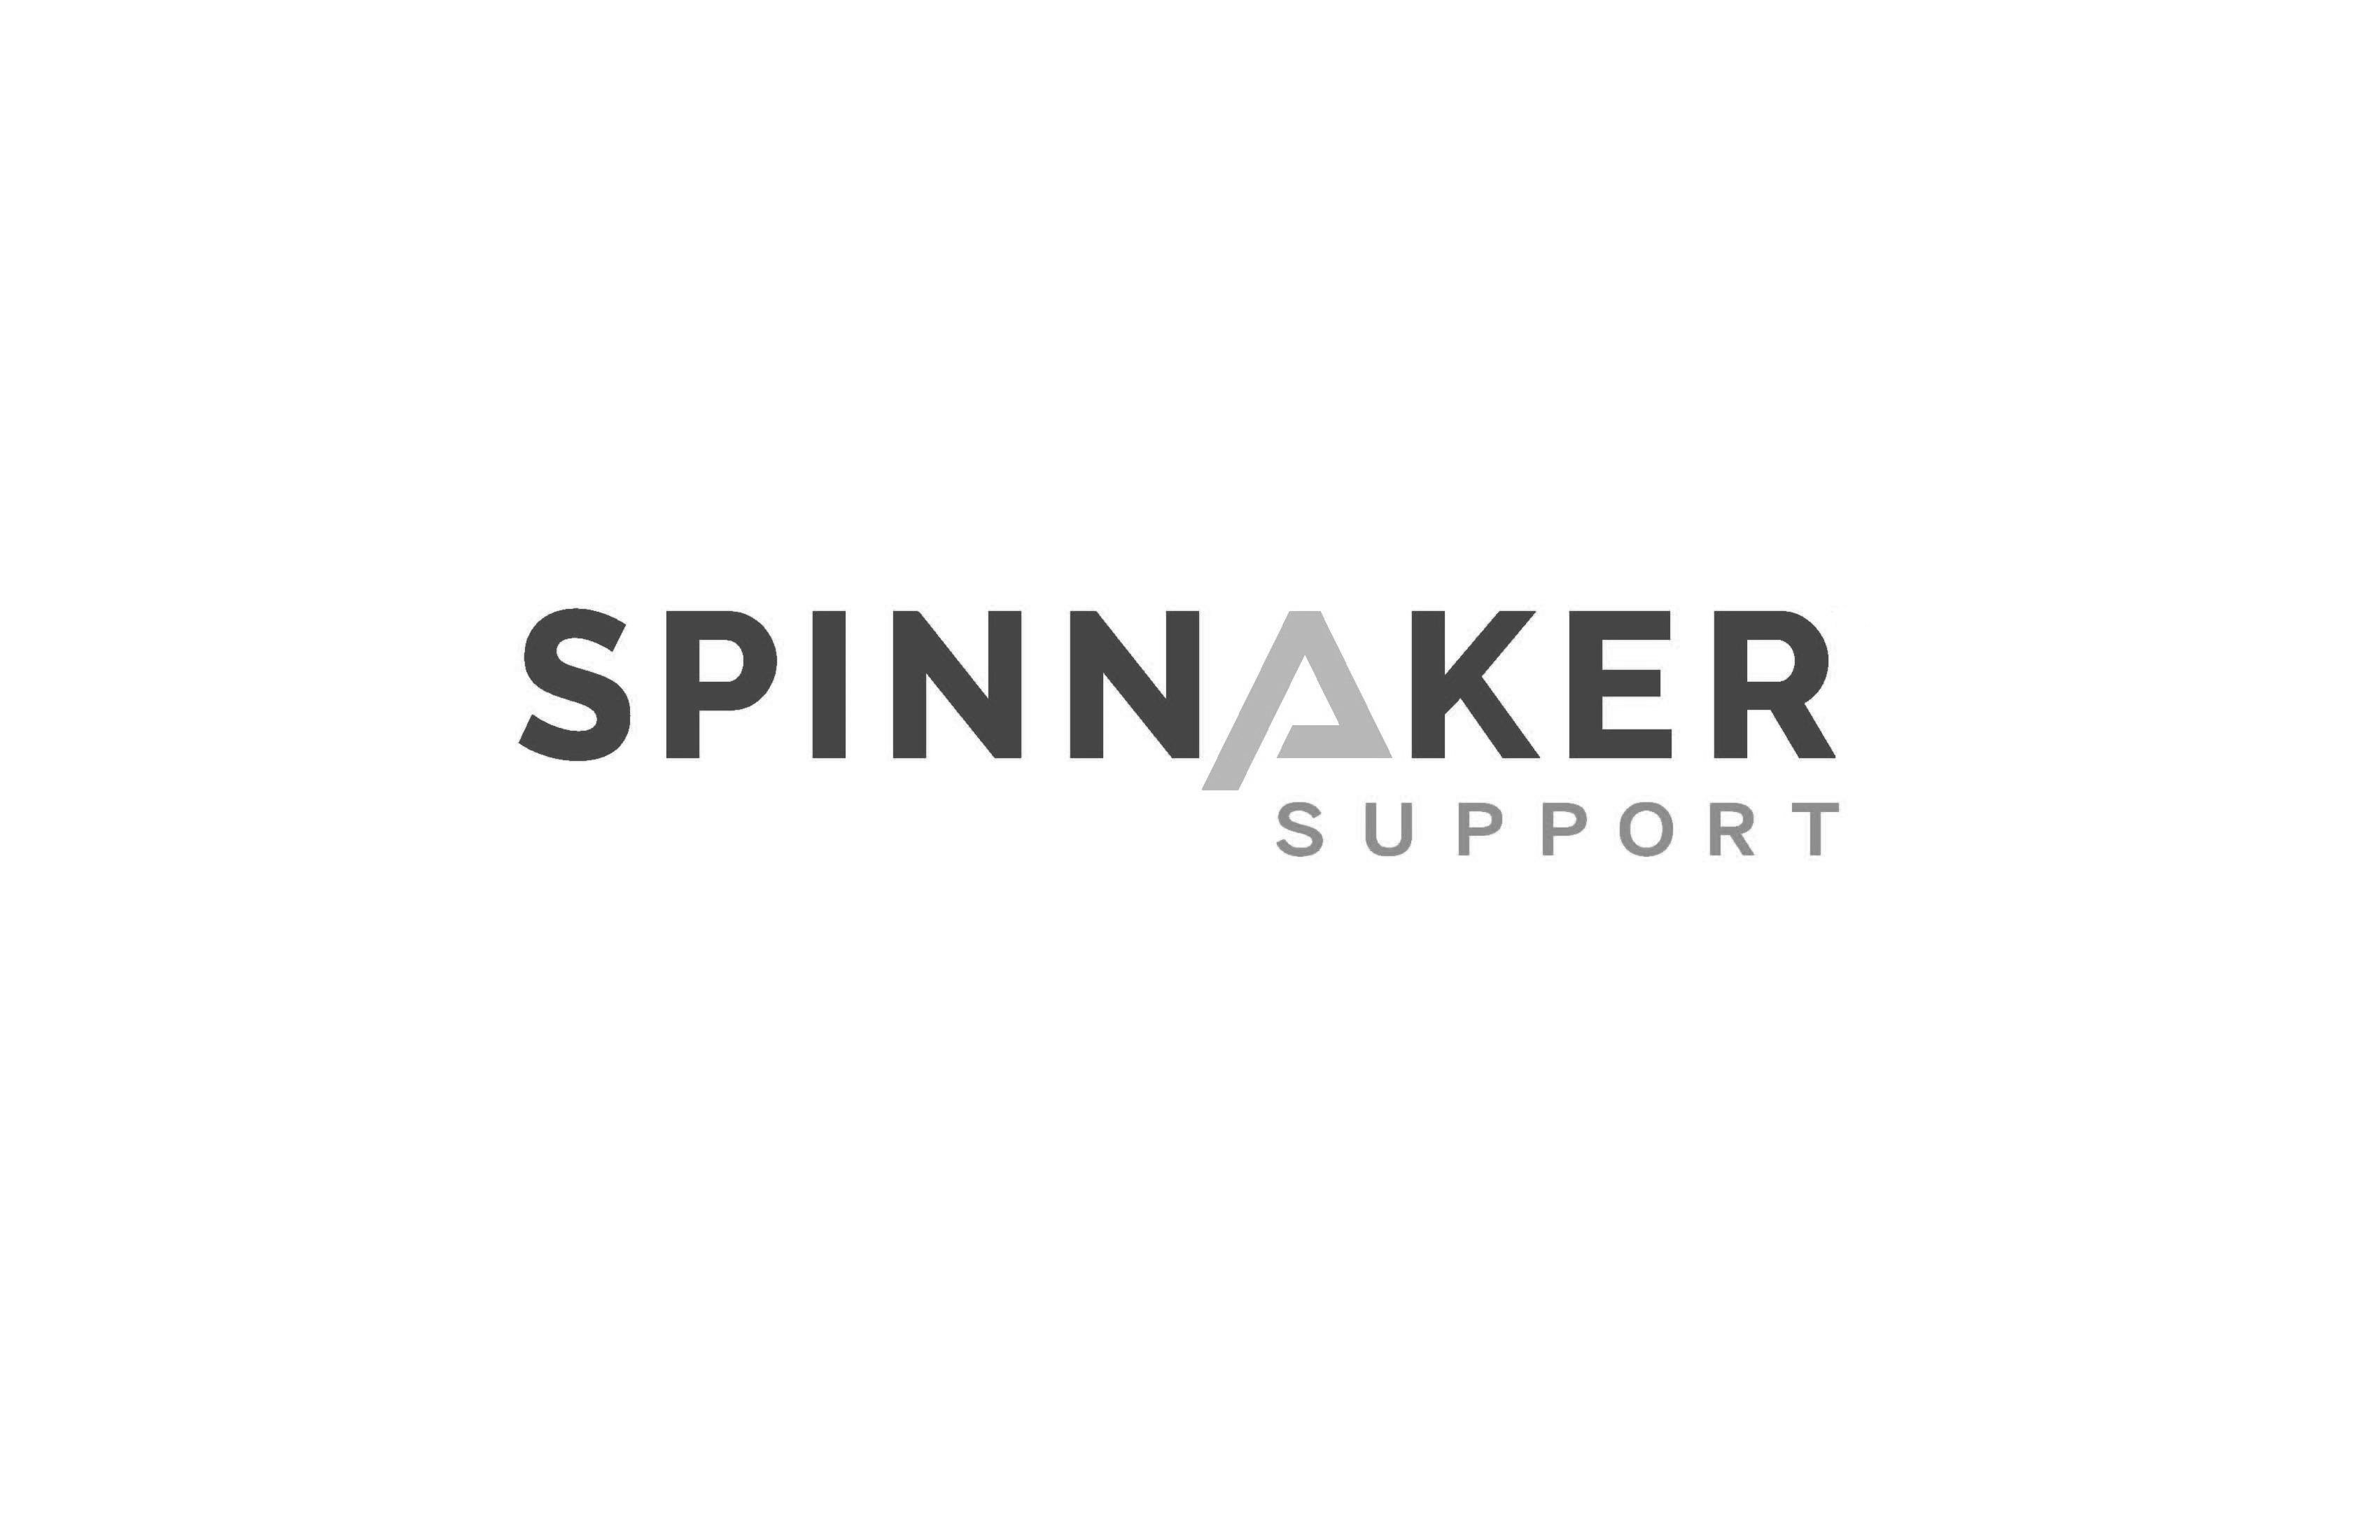  SPINNAKER SUPPORT